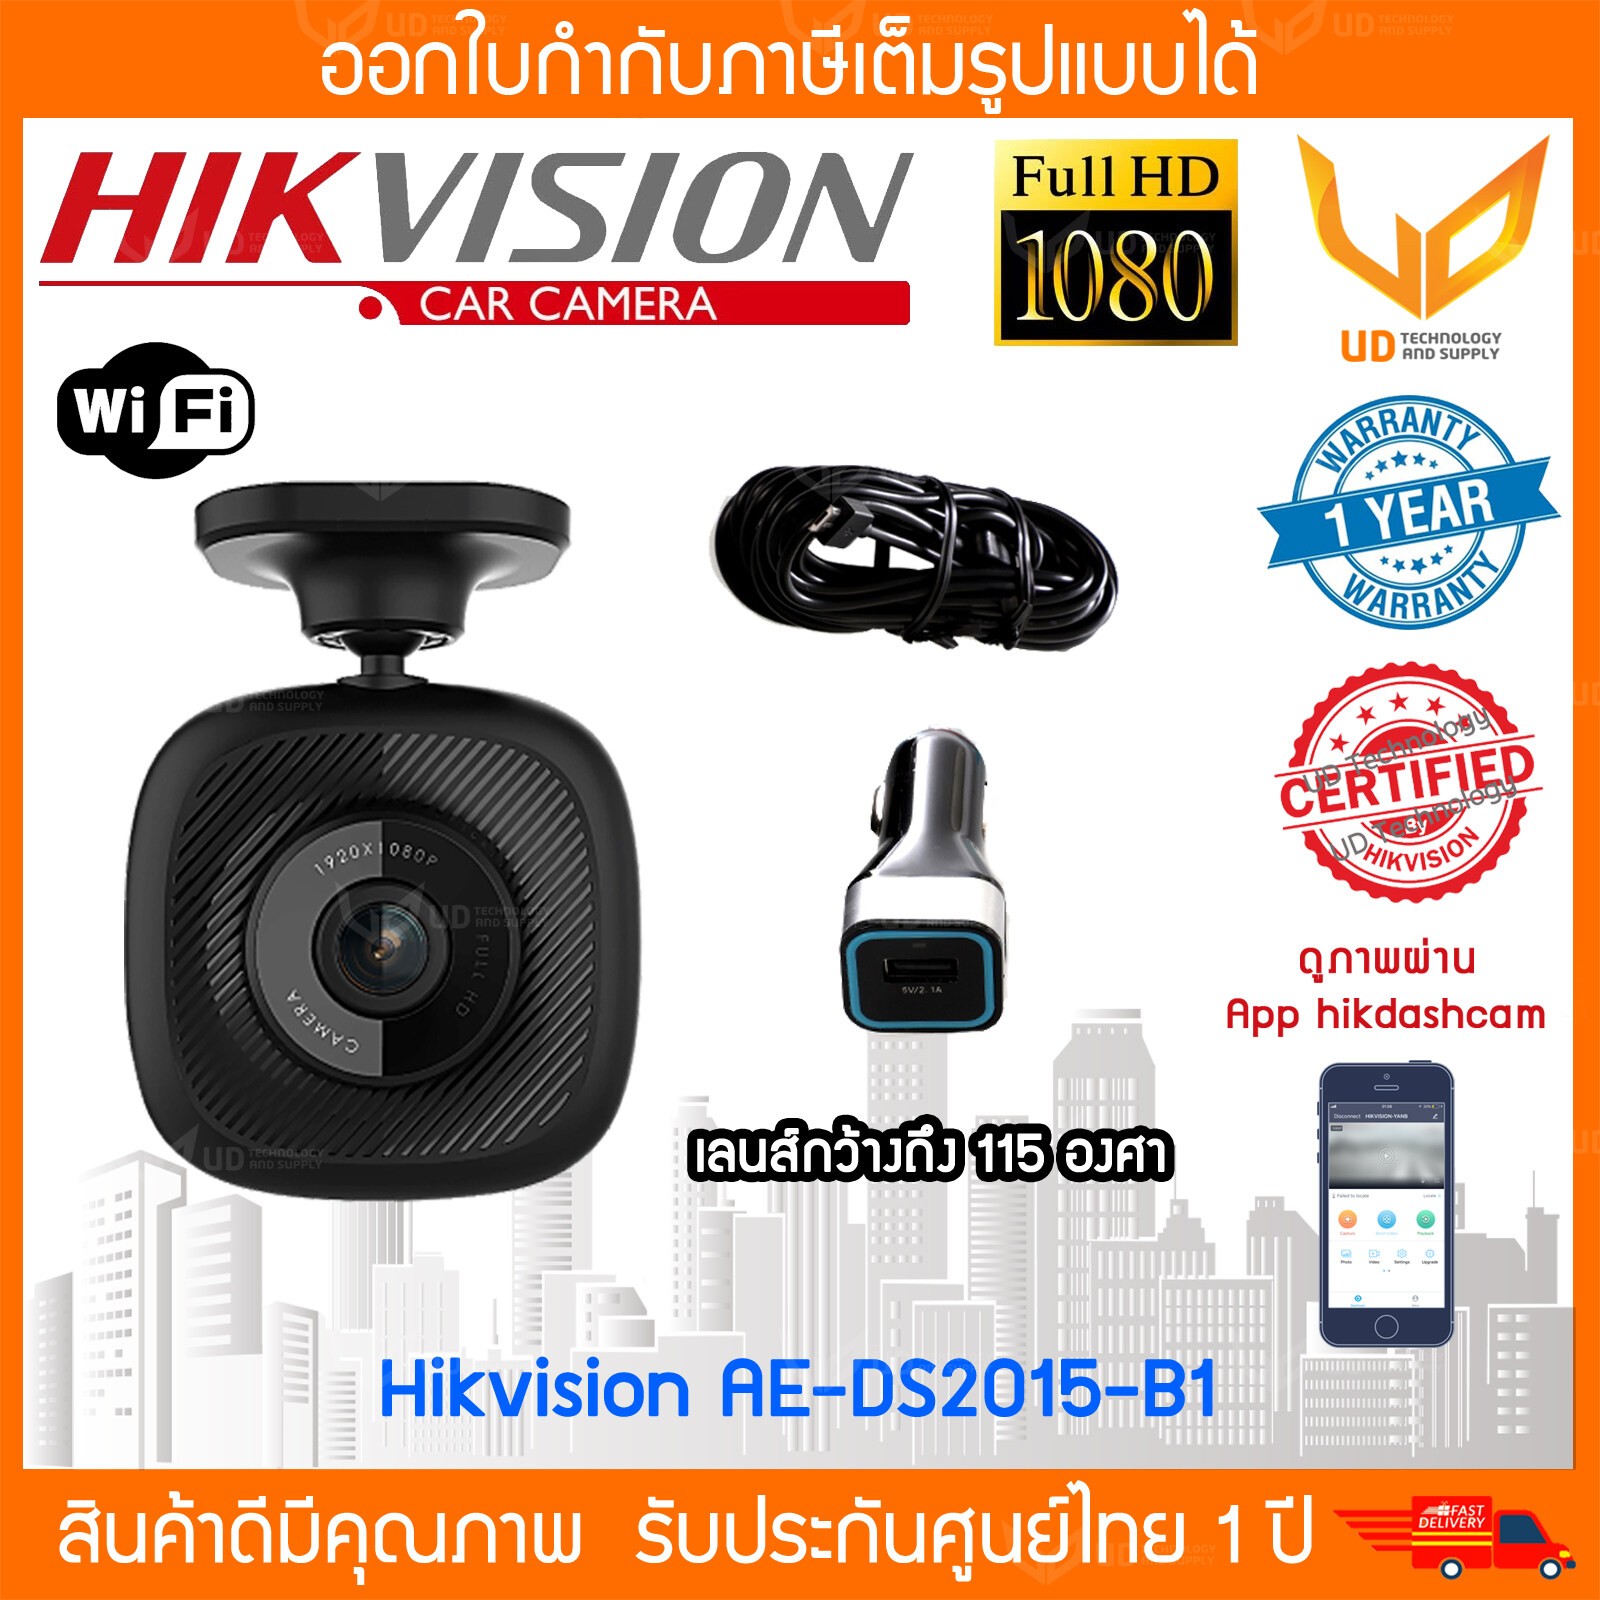 [ ส่งฟรี ] กล้องติดรถยนต์ HIKVISION AE-DC2015-B1